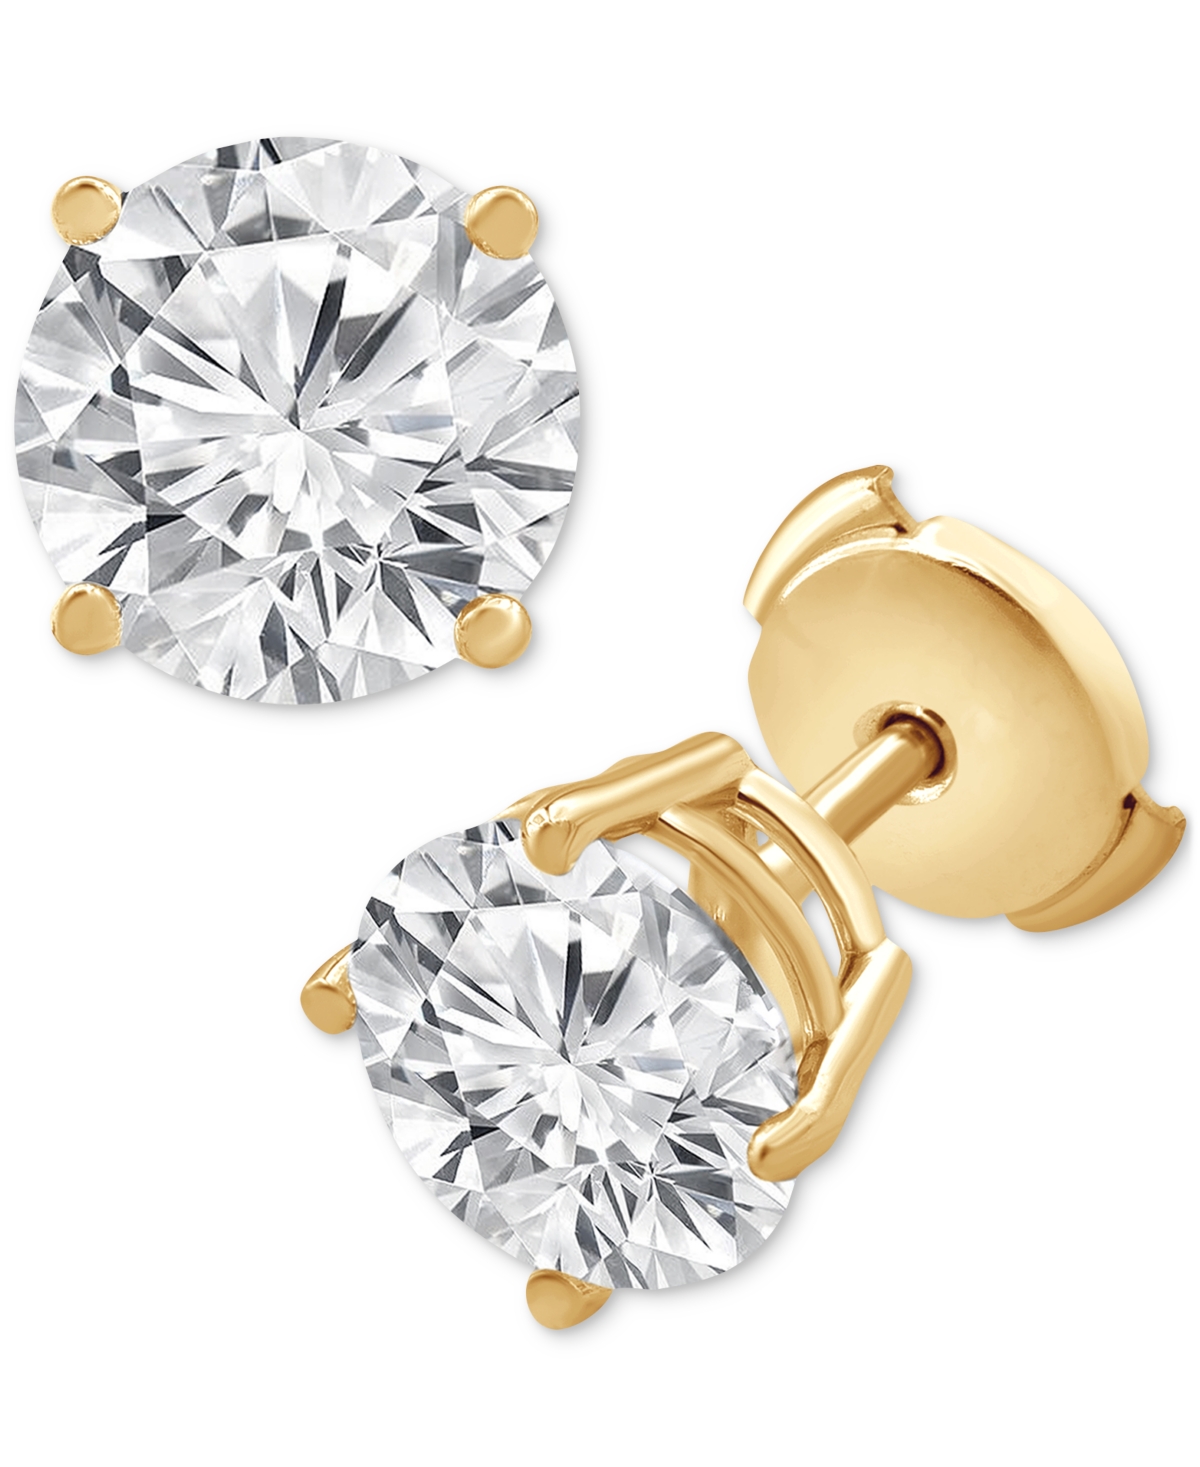 Certified Lab Grown Diamond Stud Earrings (5 ct. t.w.) in 14k Gold - White Gold